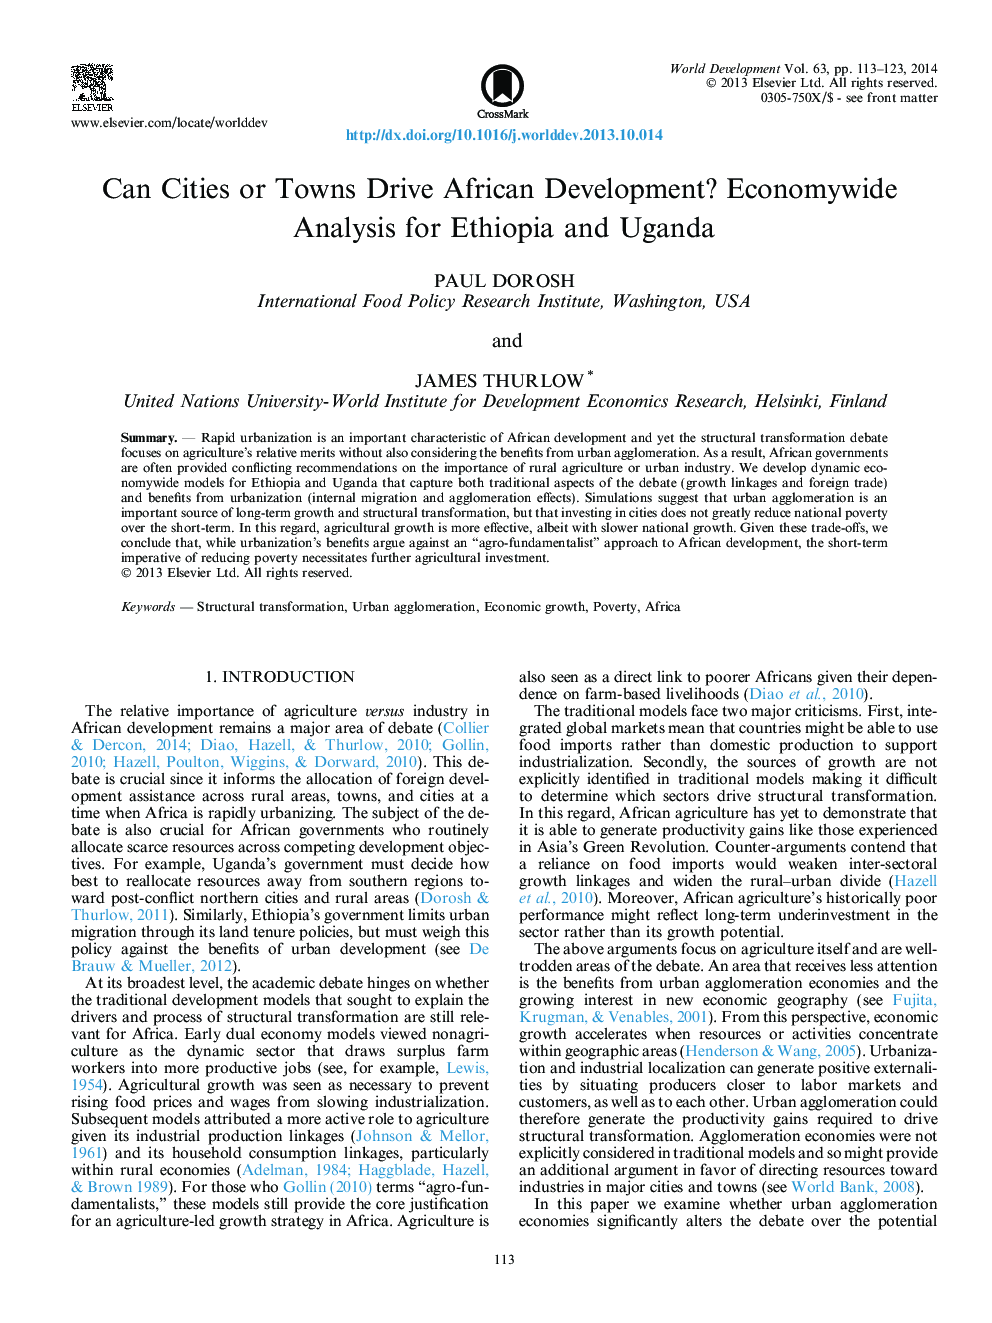 آیا شهرها یا شهرک های می‌توانند توسعه آفریقا را تحقق ببخشند؟ تجزیه و تحلیل اقتصاد کل در اتیوپی و اوگاندا